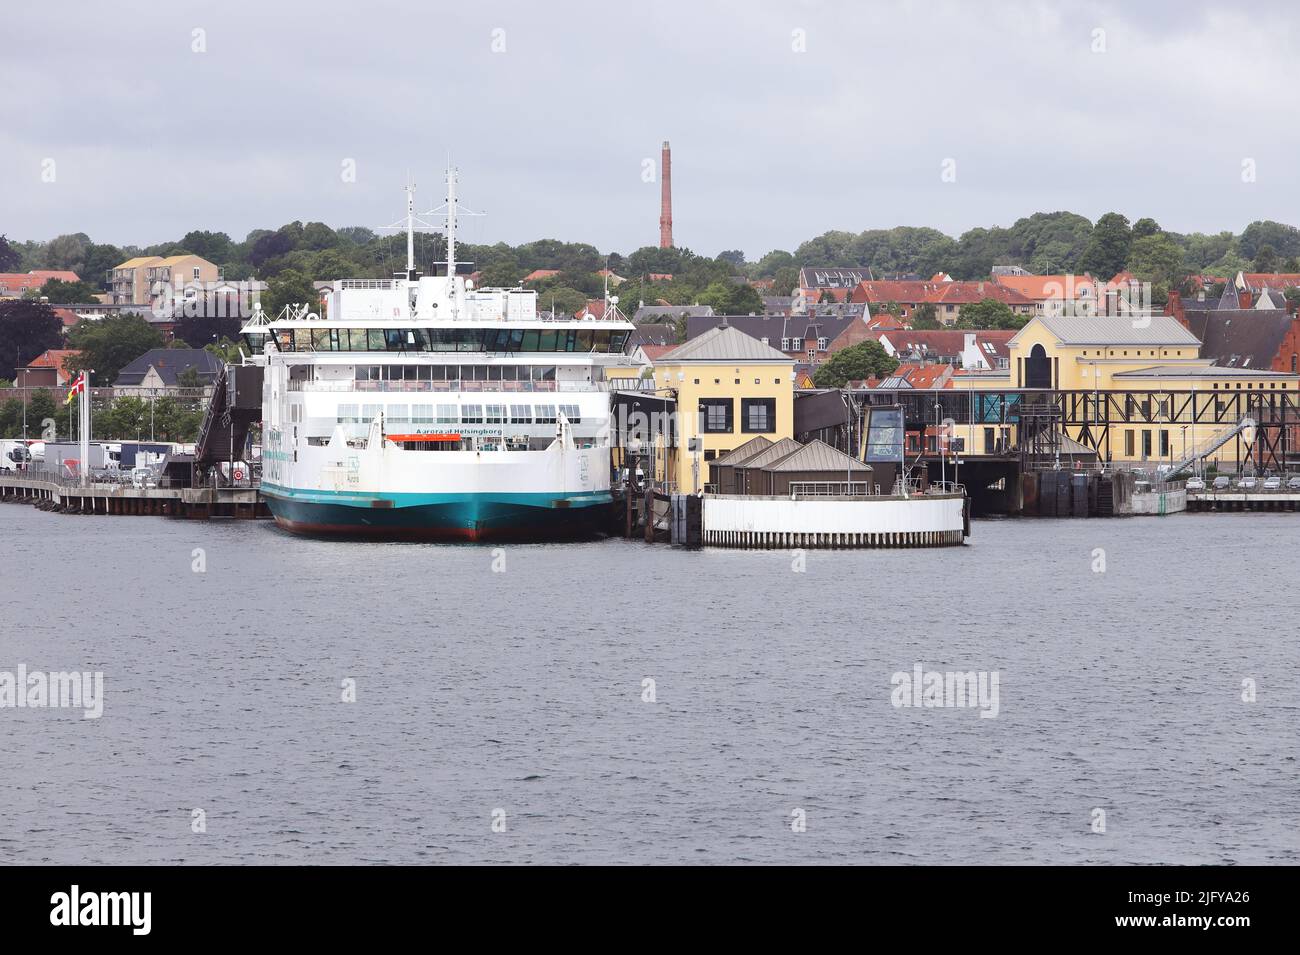 Helsingor, Denmark - June 14, 2022: Ferry berth in Helsingor operating the international car ferry route to Helsingborg in Sweden. Stock Photo